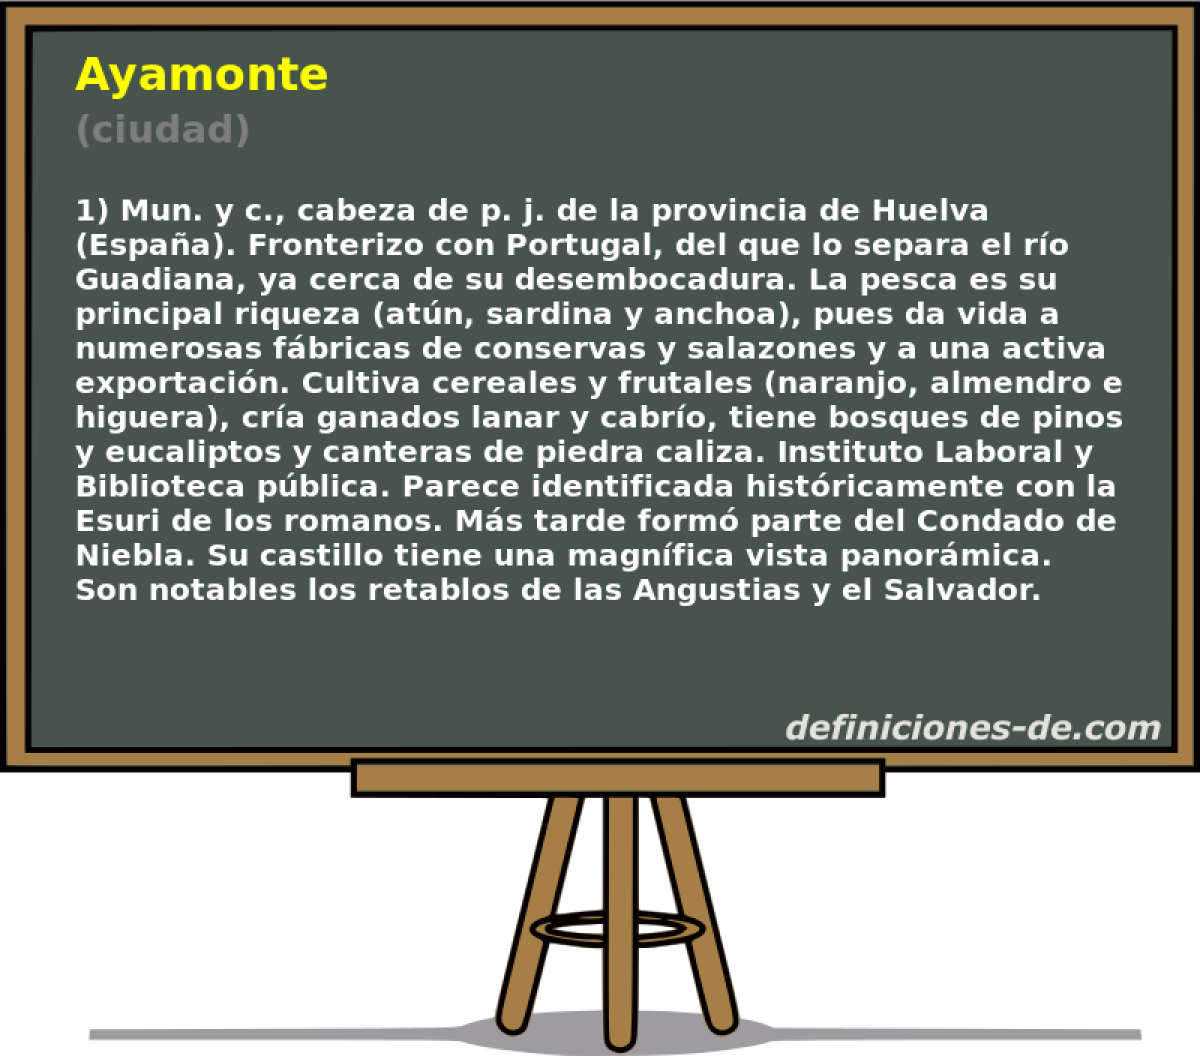 Ayamonte (ciudad)